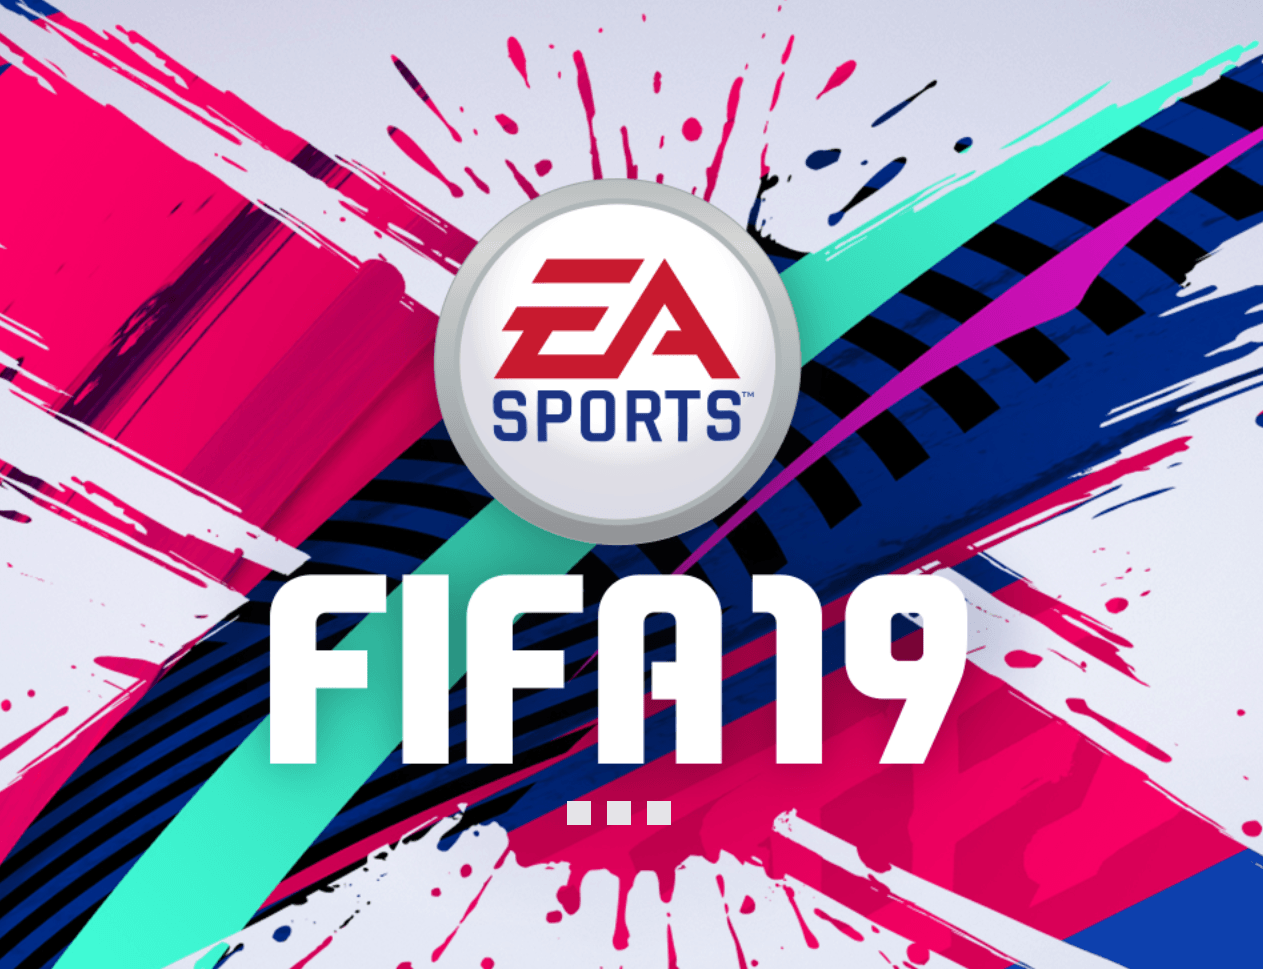 FIFA Logo - Cannot enter the main menu, stuck at FIFA 19 logo with 3 dots